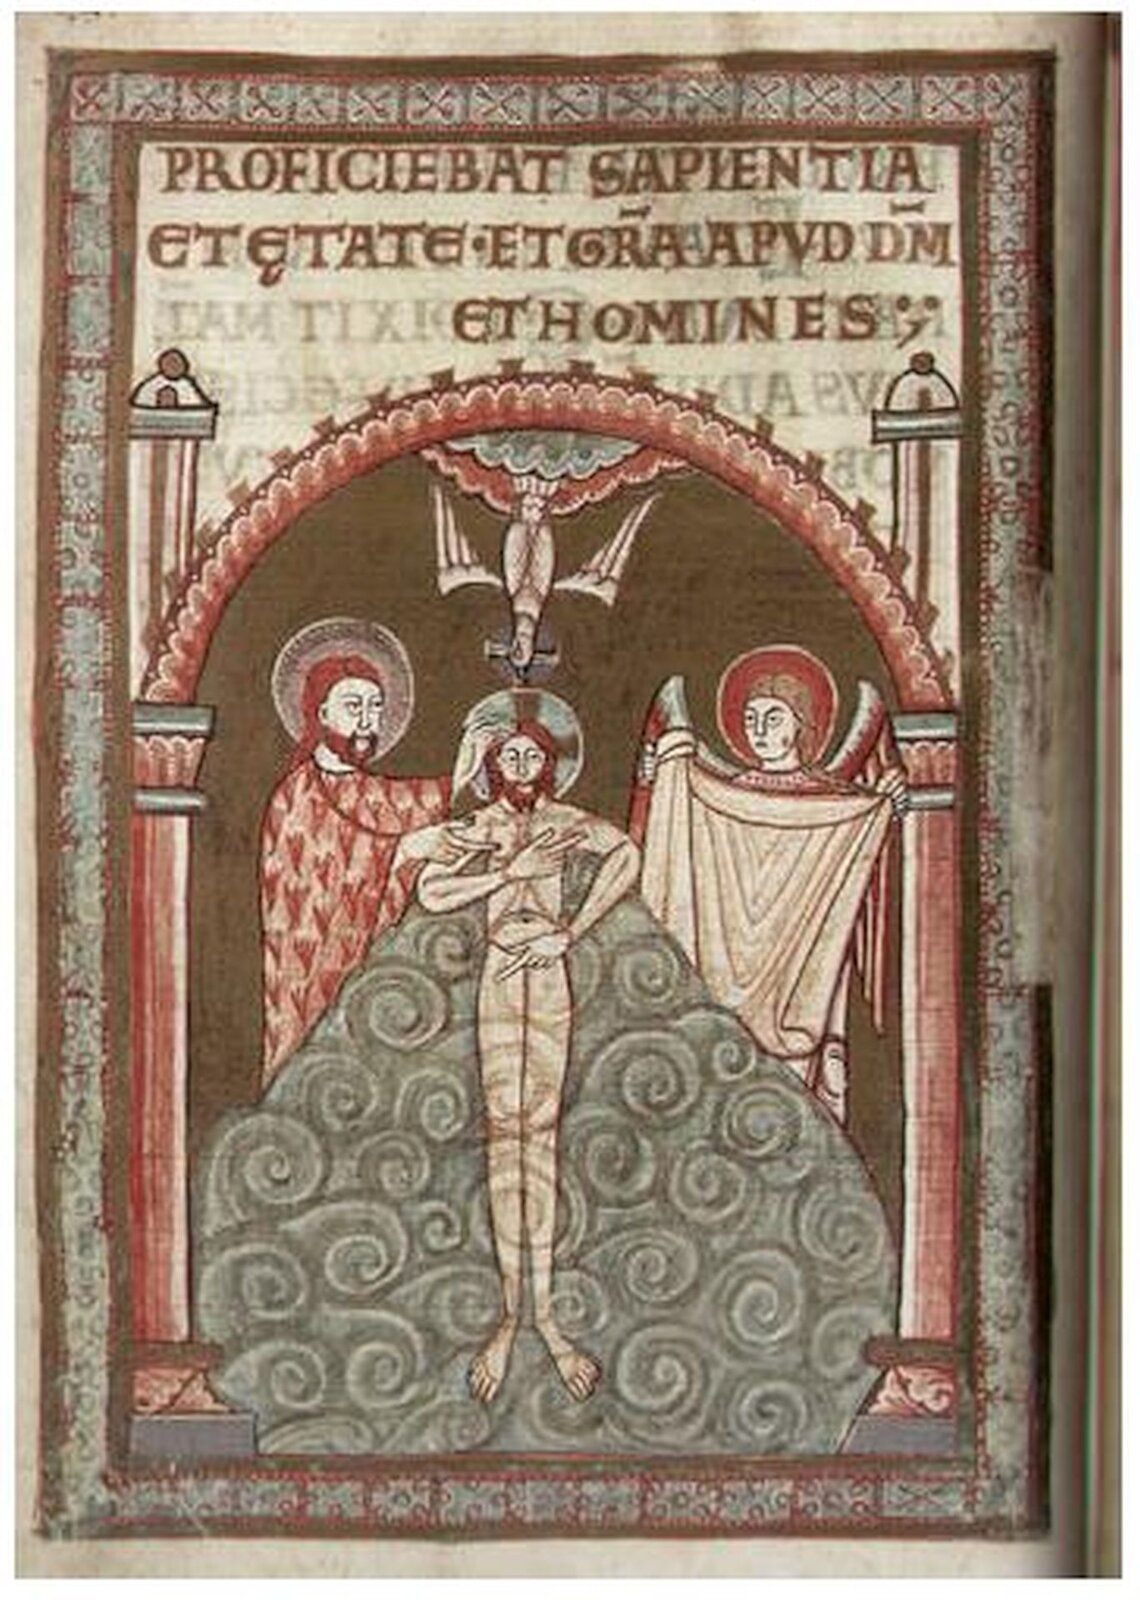 Fotografia nieznanego autora przedstawia kartę z Codex Aureus Gnesensis, która uznawana jest za jedną z najcenniejszych ksiąg polskiego średniowiecza. Na karcie widoczne jest łacińskie zdanie oraz ilustracja przedstawiająca nagiego Chrystusa leżącego na materiale. Obok niego widoczni są dwaj mężczyźni. Jeden przytrzymuje głowę Jezusowi, a drugi trzyma szatę. Nad Jezusem widoczny jest Duch Święty. . 